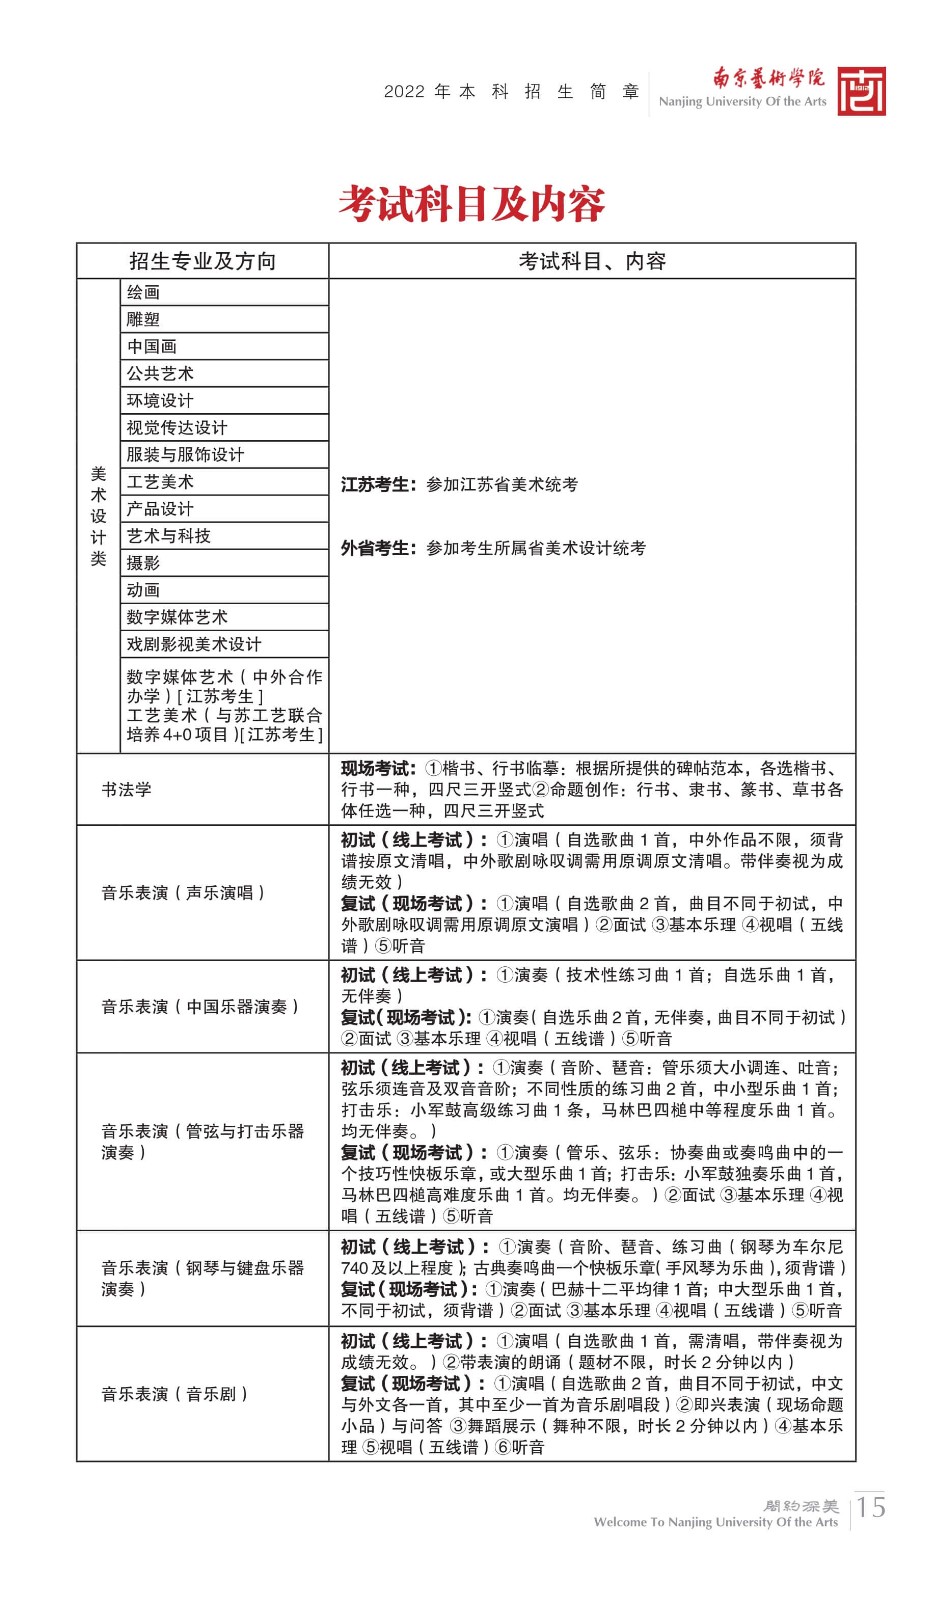 2022年南京艺术学院本科舞蹈类、音乐类招生简章、校考报名及考试相关安排、联系方式及声明